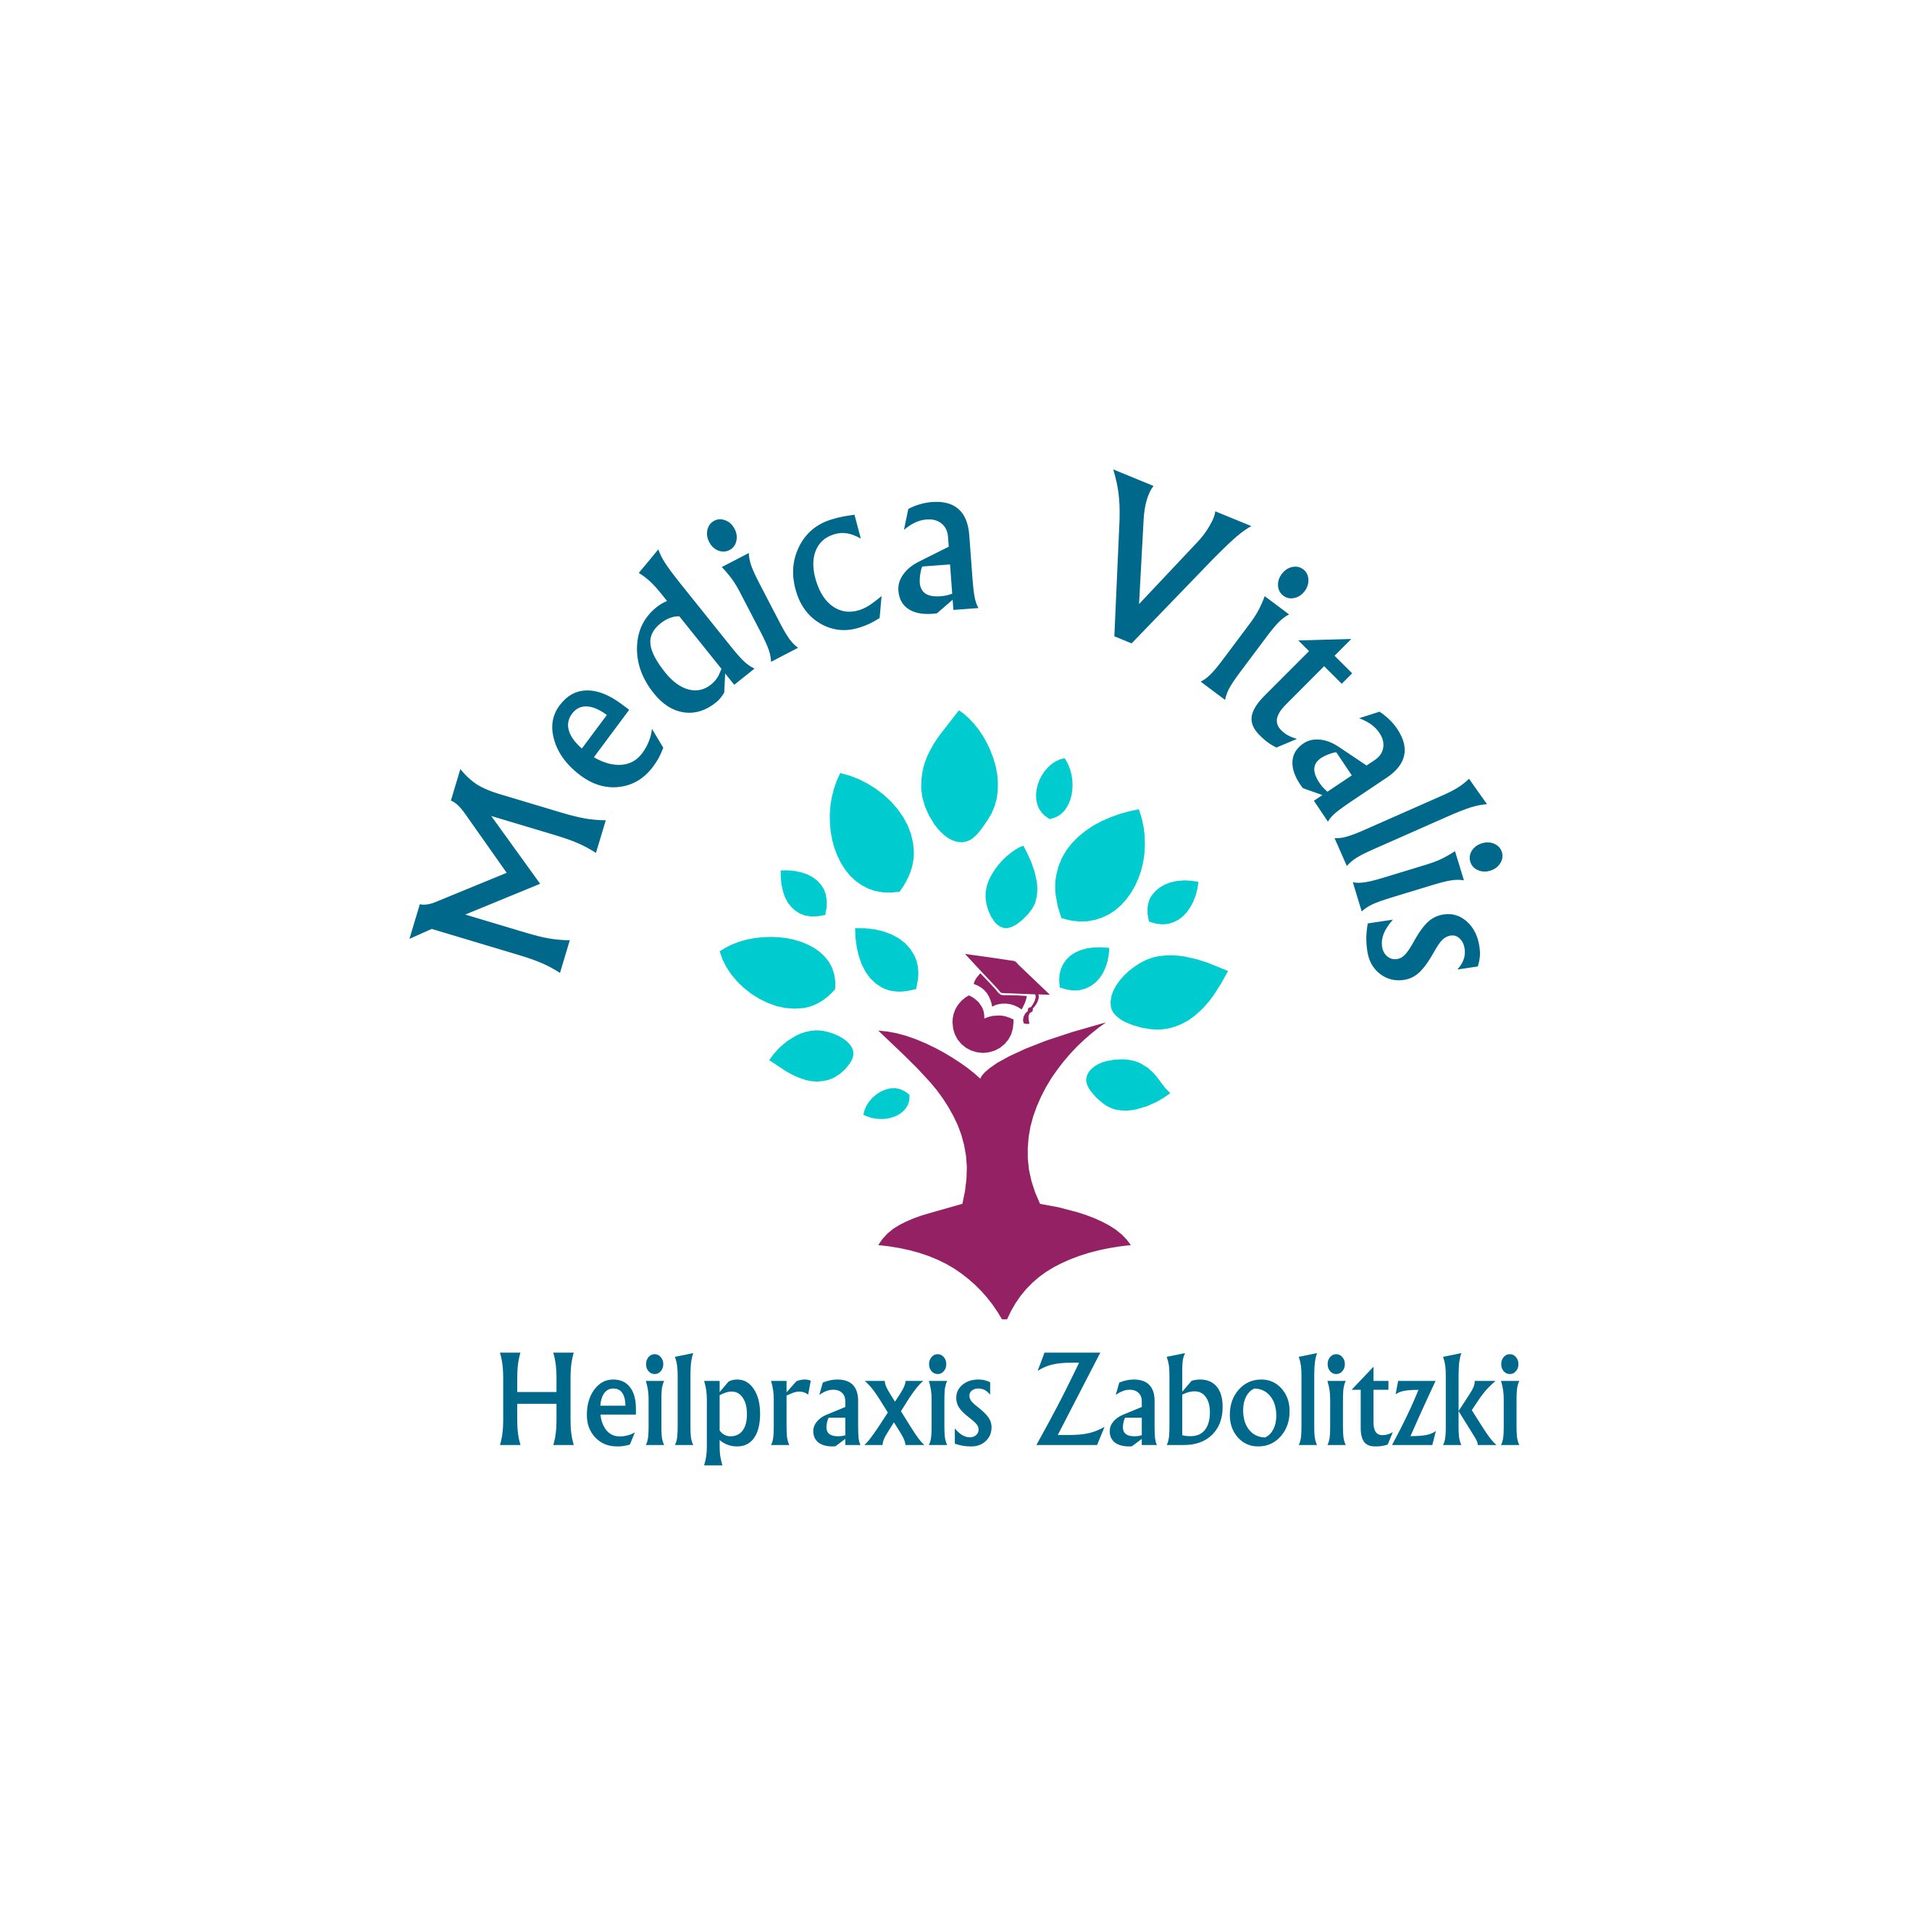 Medica Vitalis - Heilpraxis Zabolitzki in Bad Vilbel - Logo